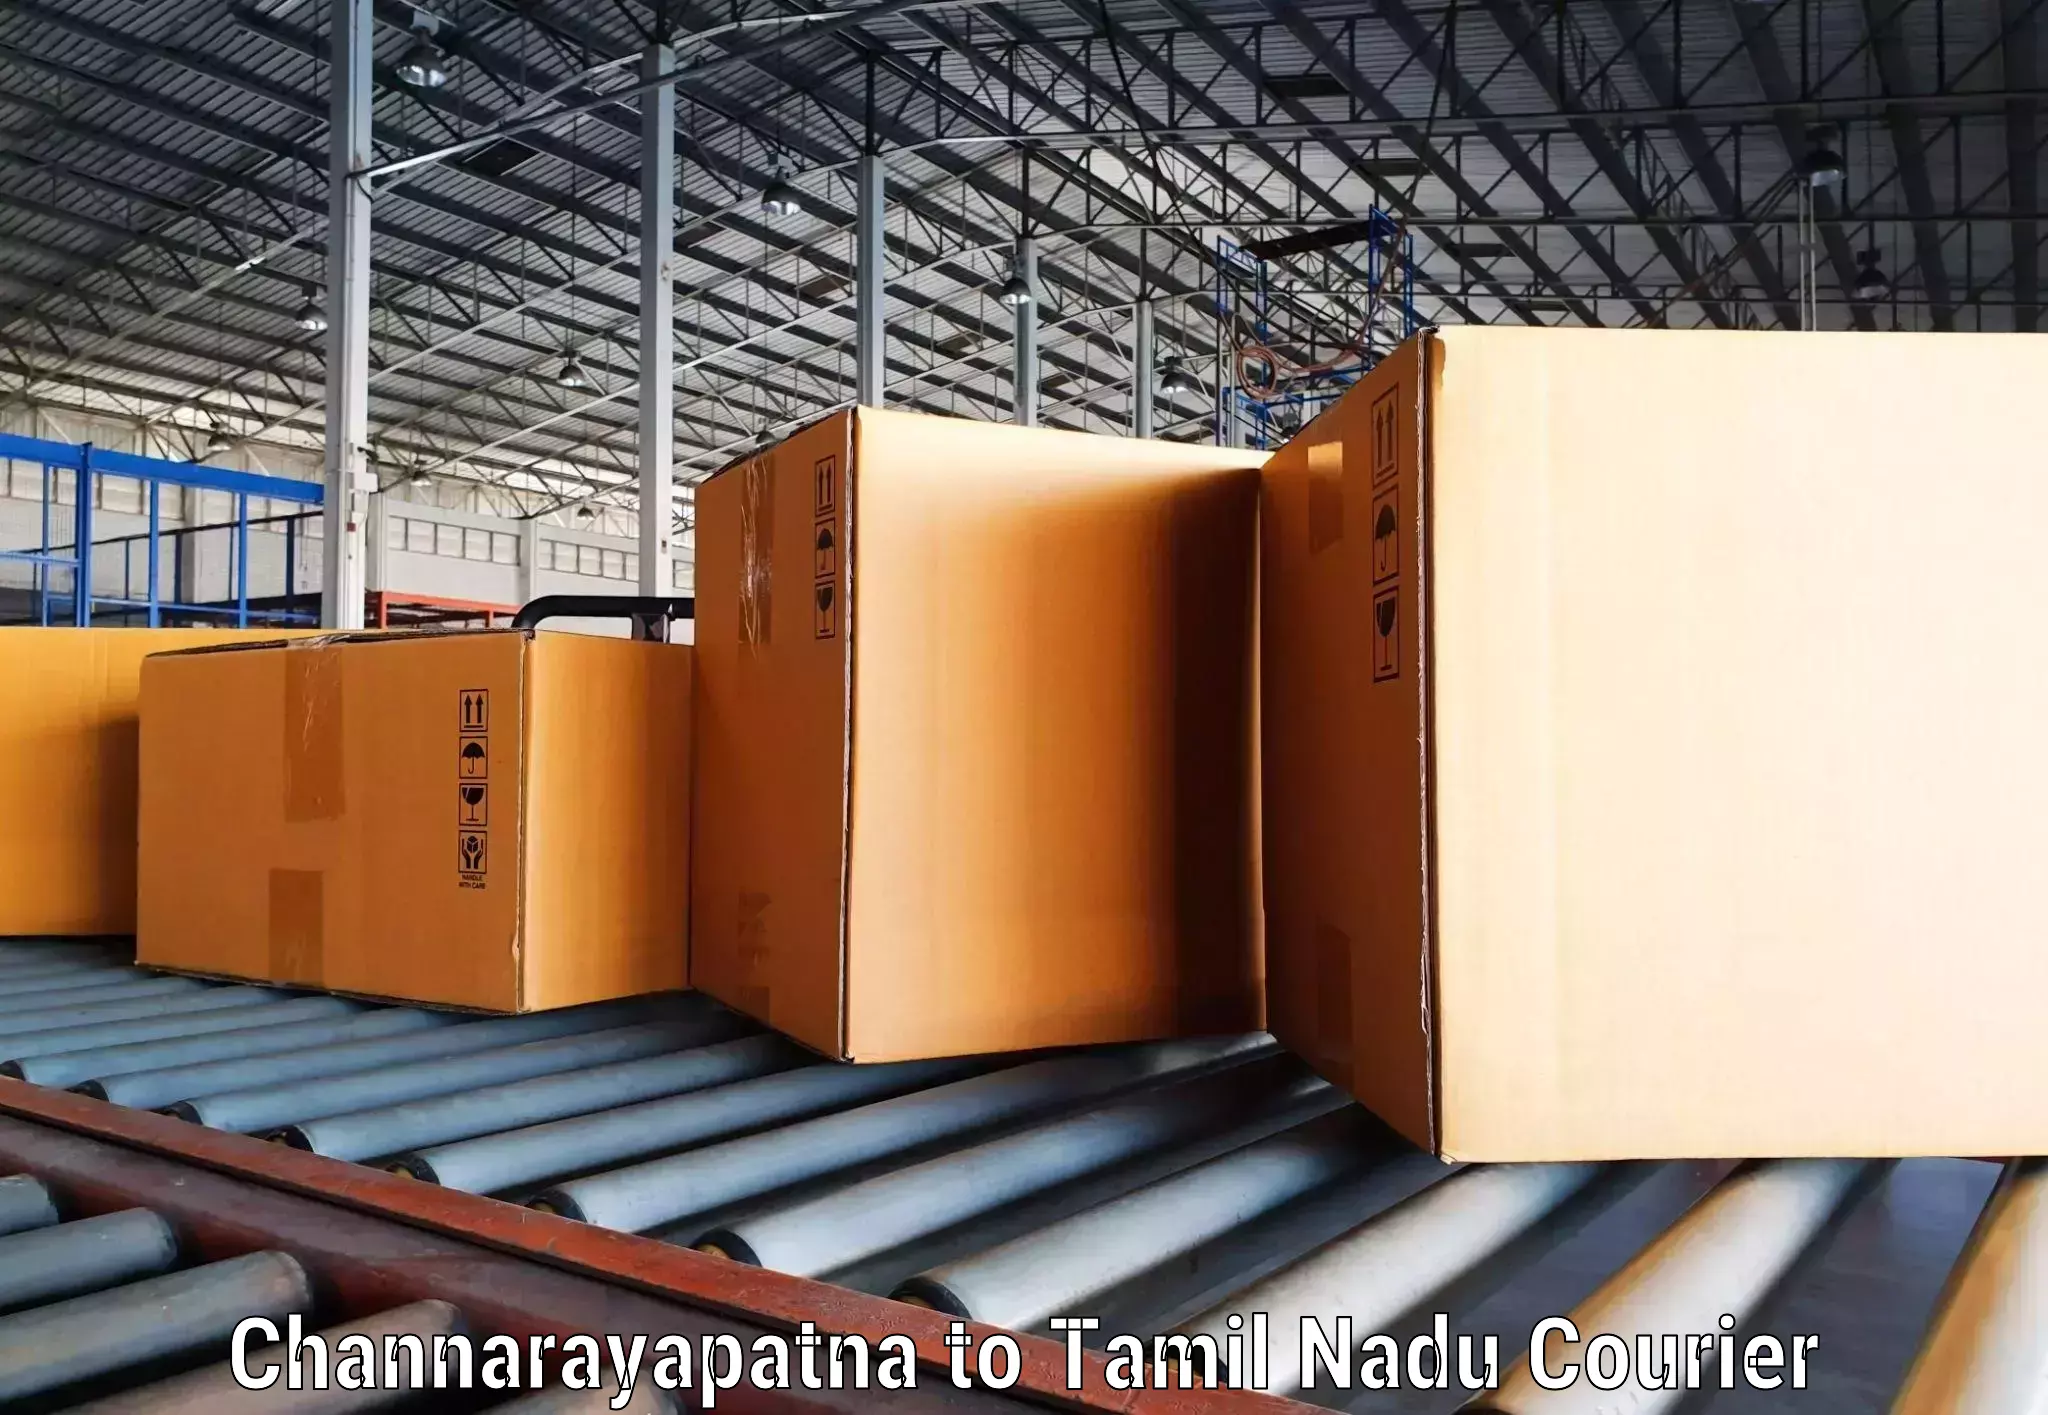 Advanced shipping network Channarayapatna to Tiruvallur